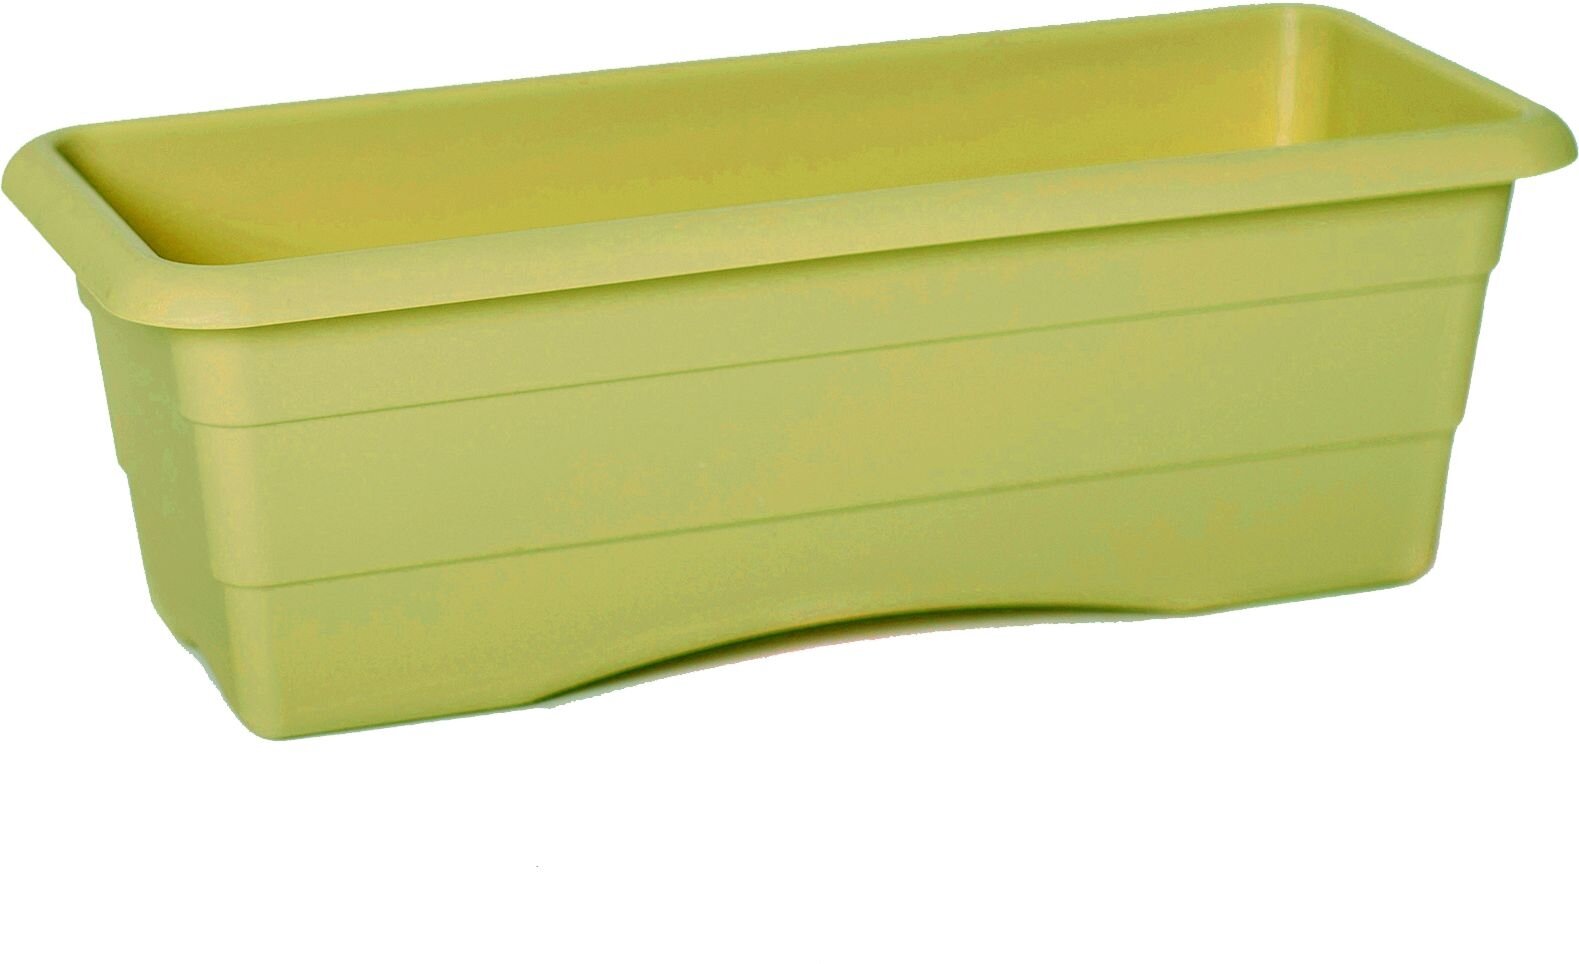 Ящик балконный GARDENPLAS оливковый 40 см